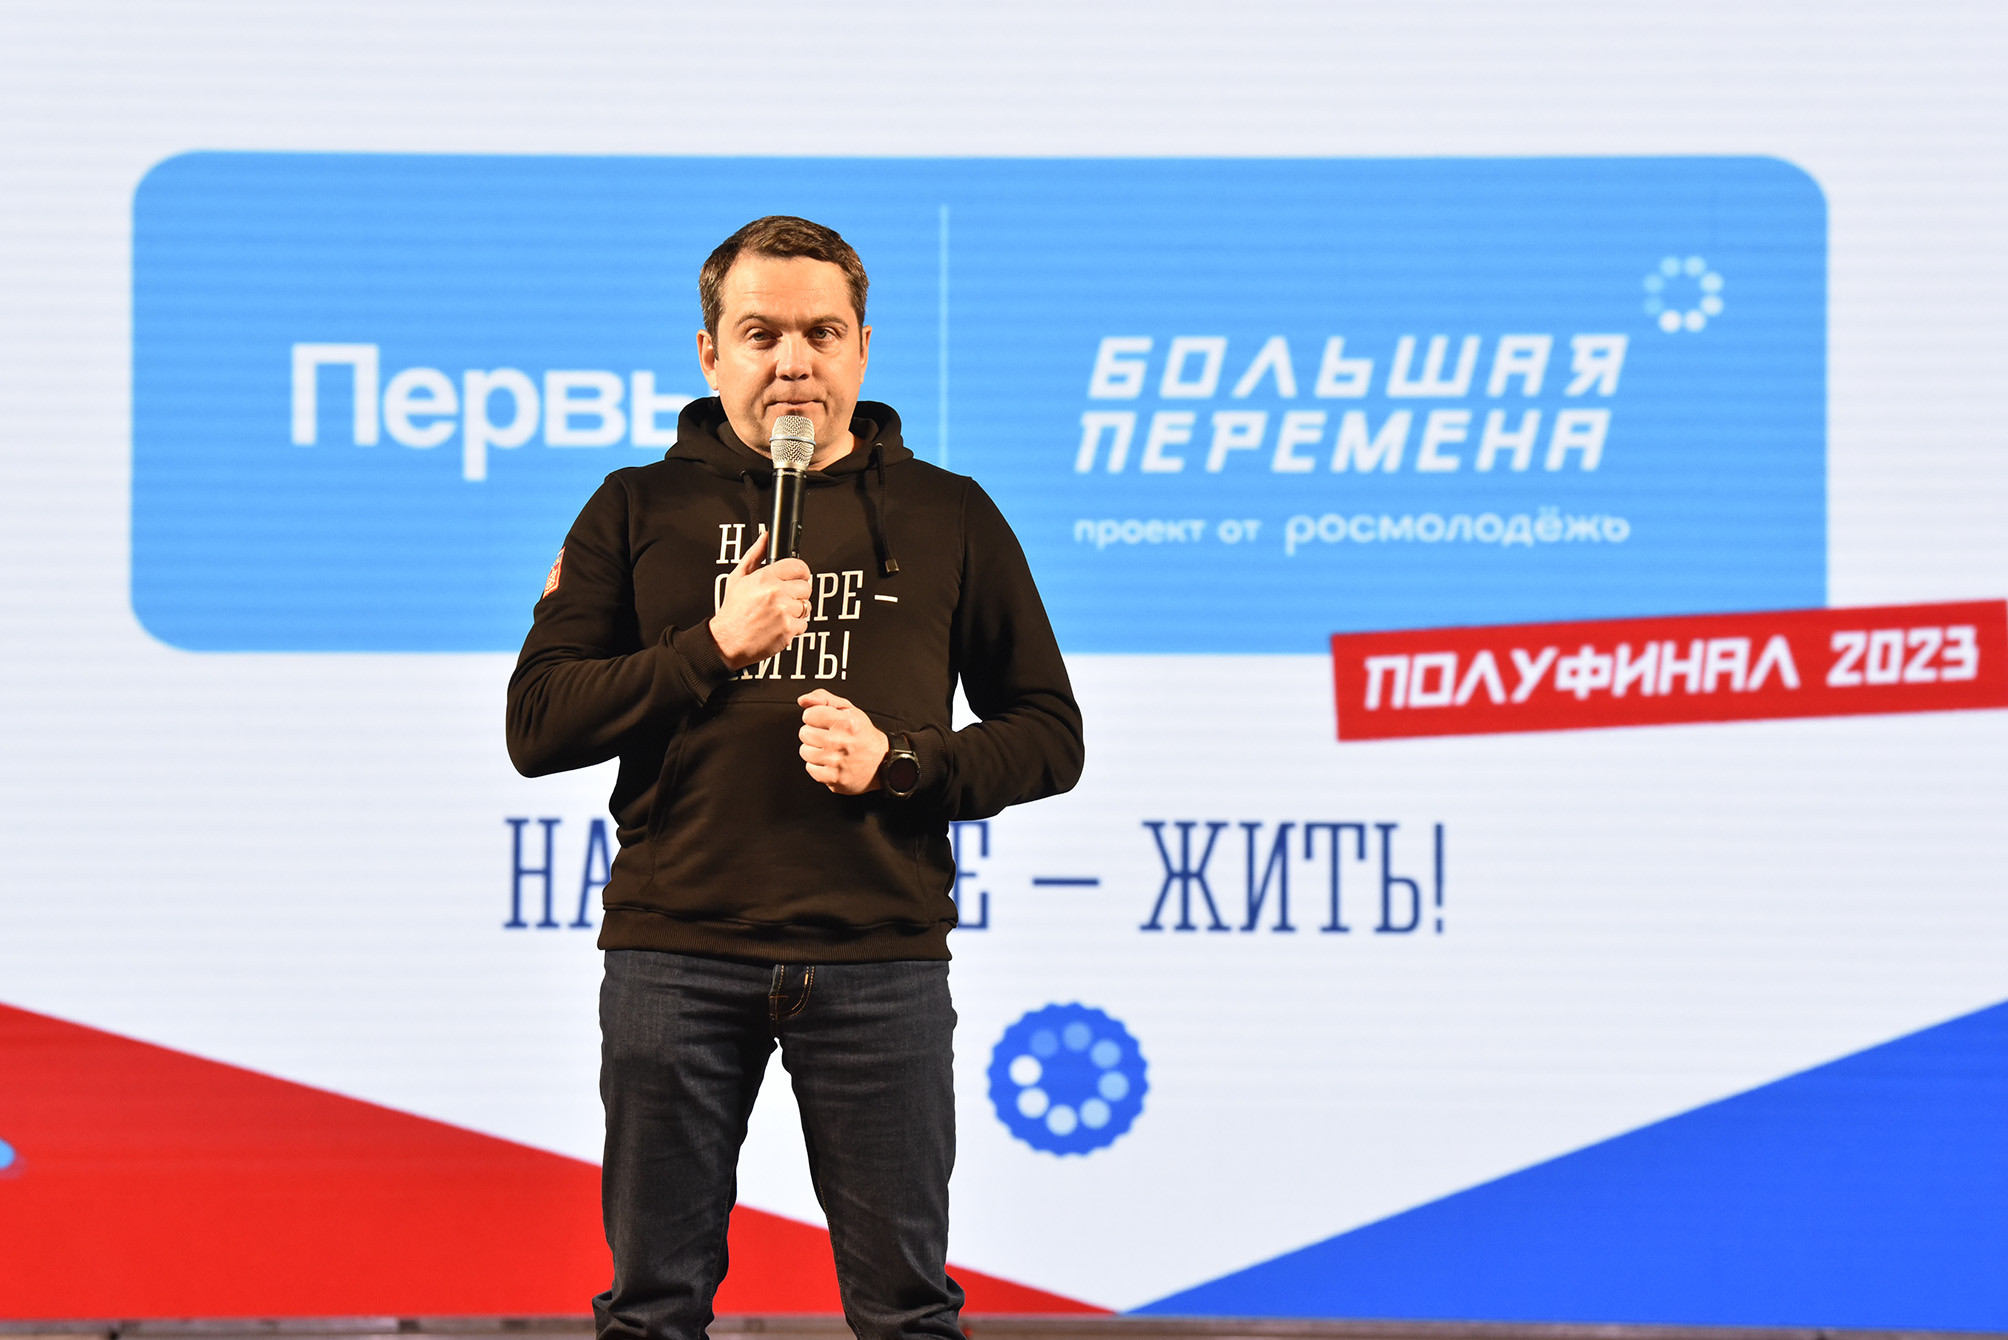 Андрей Чибис принял участие в закрытии полуфинала конкурса «Большая перемена» в Мурманске